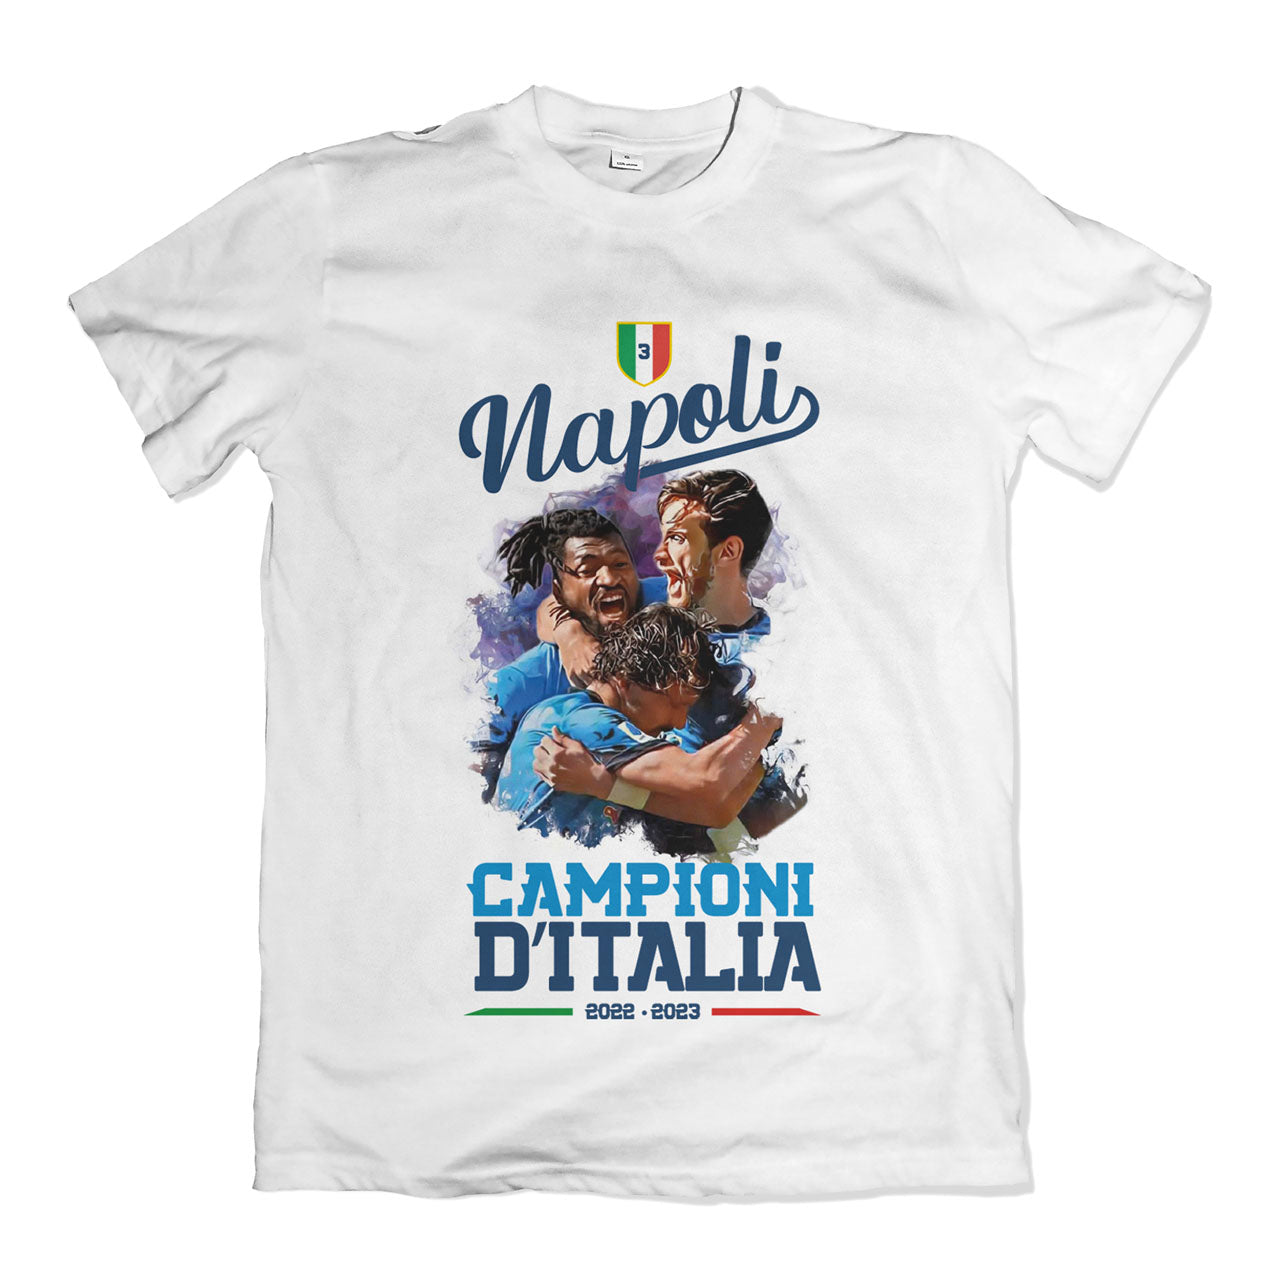 Napoli Champions 3 of sticks t-shirt - Scudetto 2023